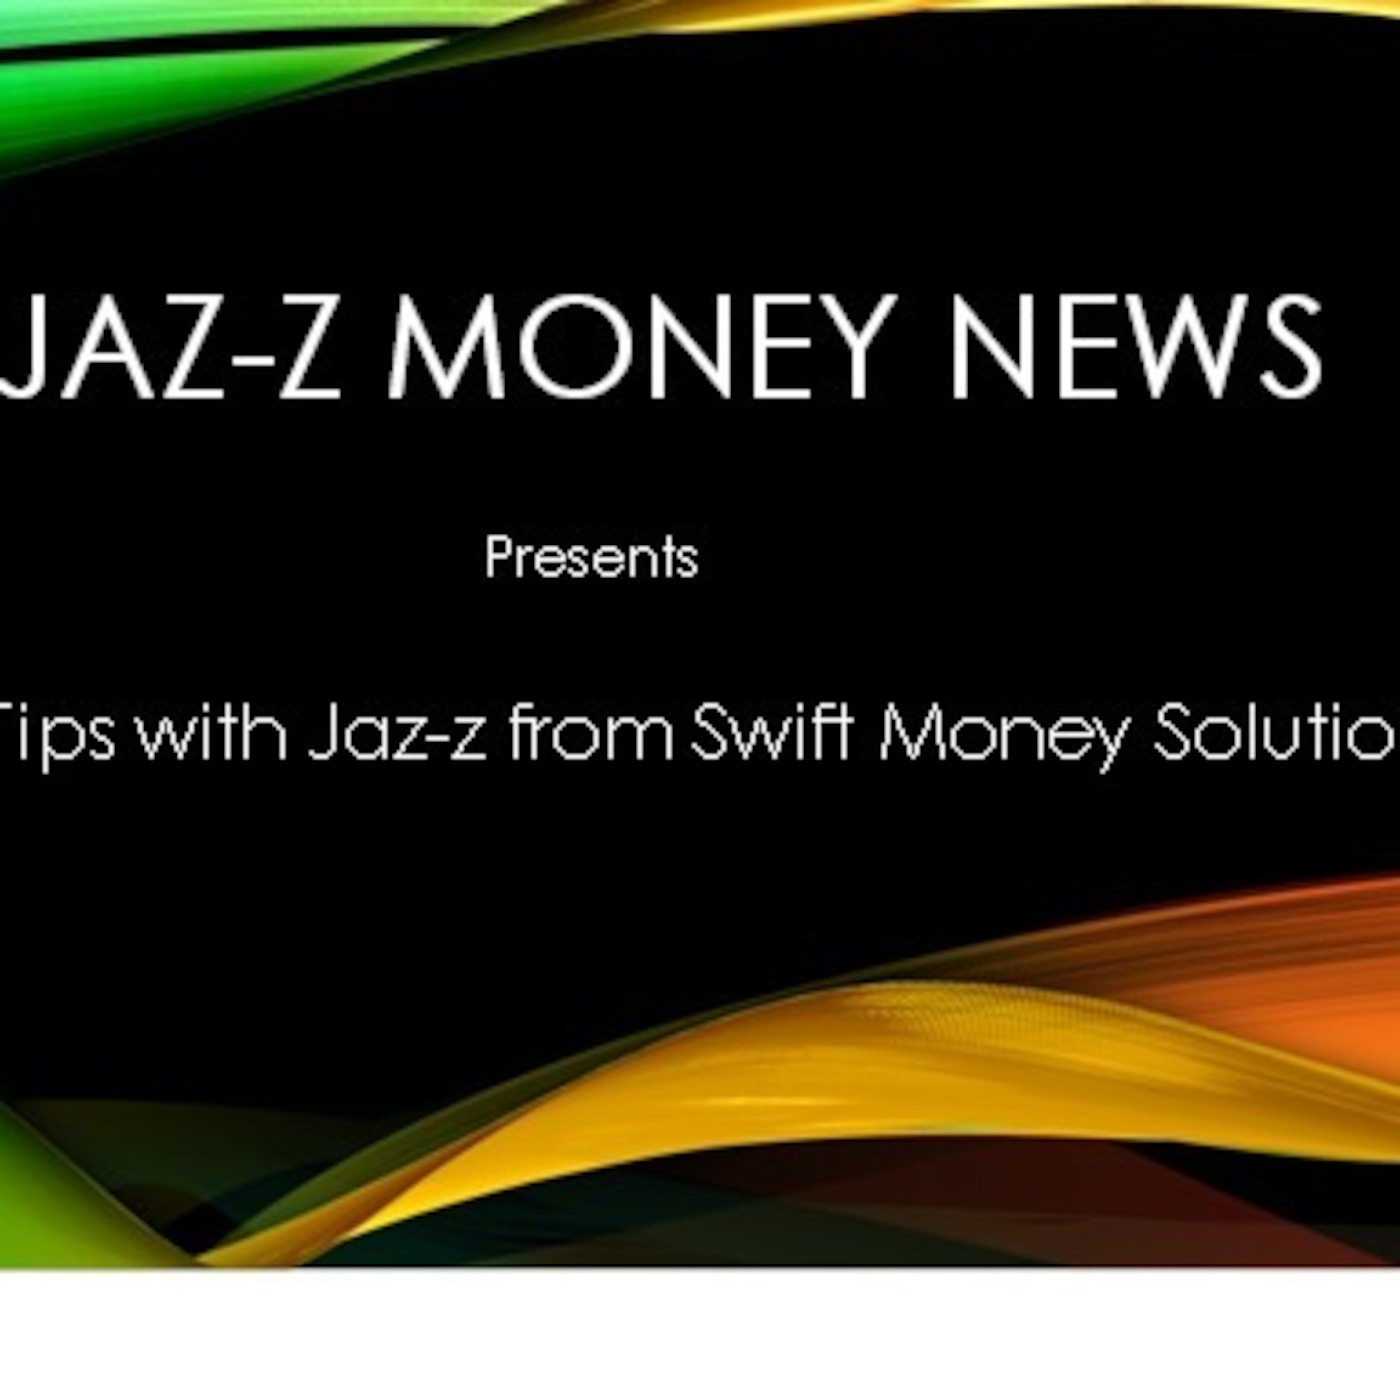 JAZ-Z & WJAZ-Z Daily Money Empowering Tip #6